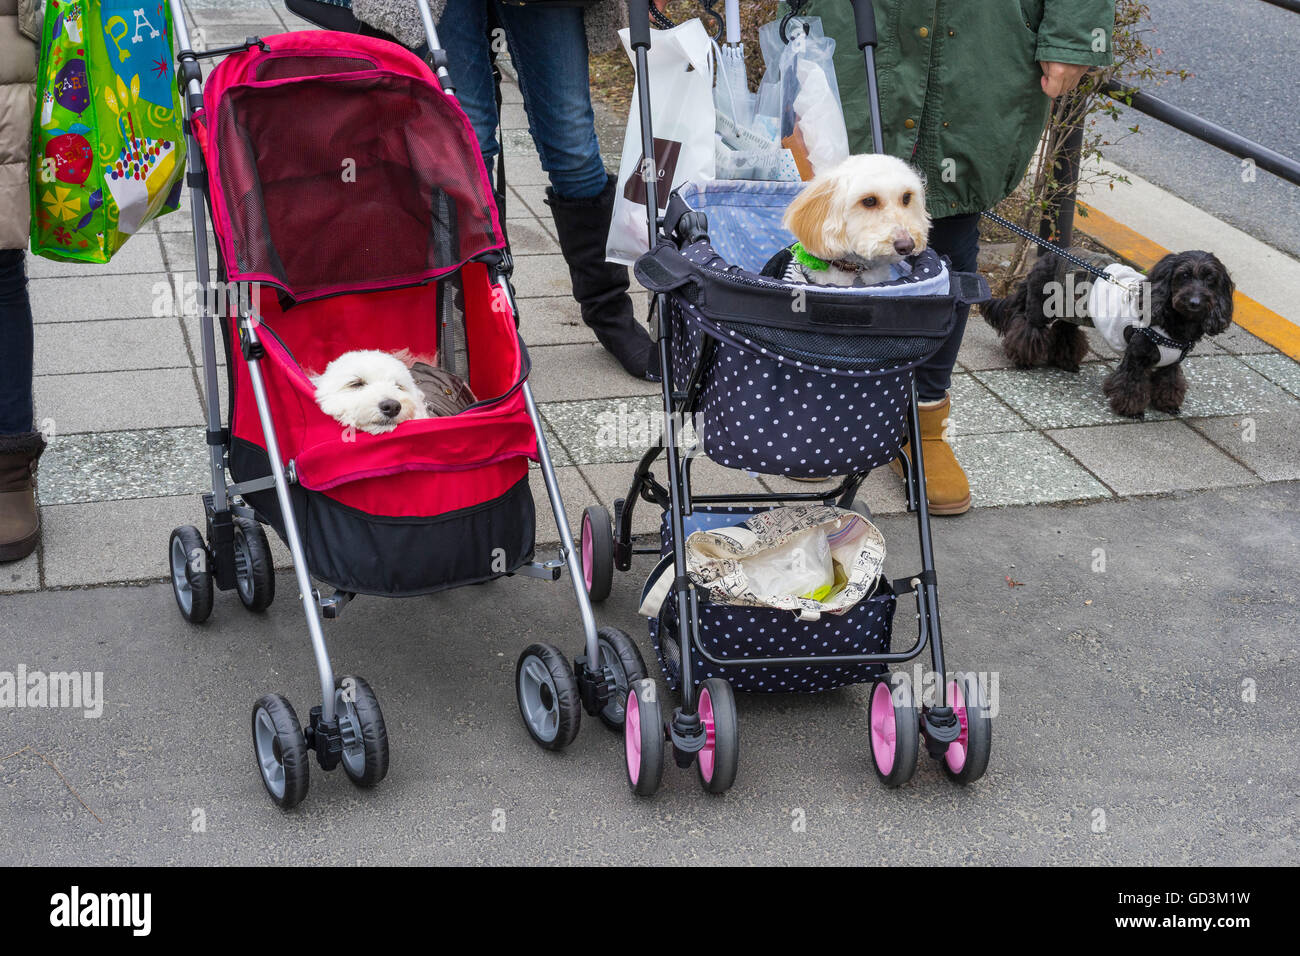 Dogs in perambulators, tokyo, japan Stock Photo